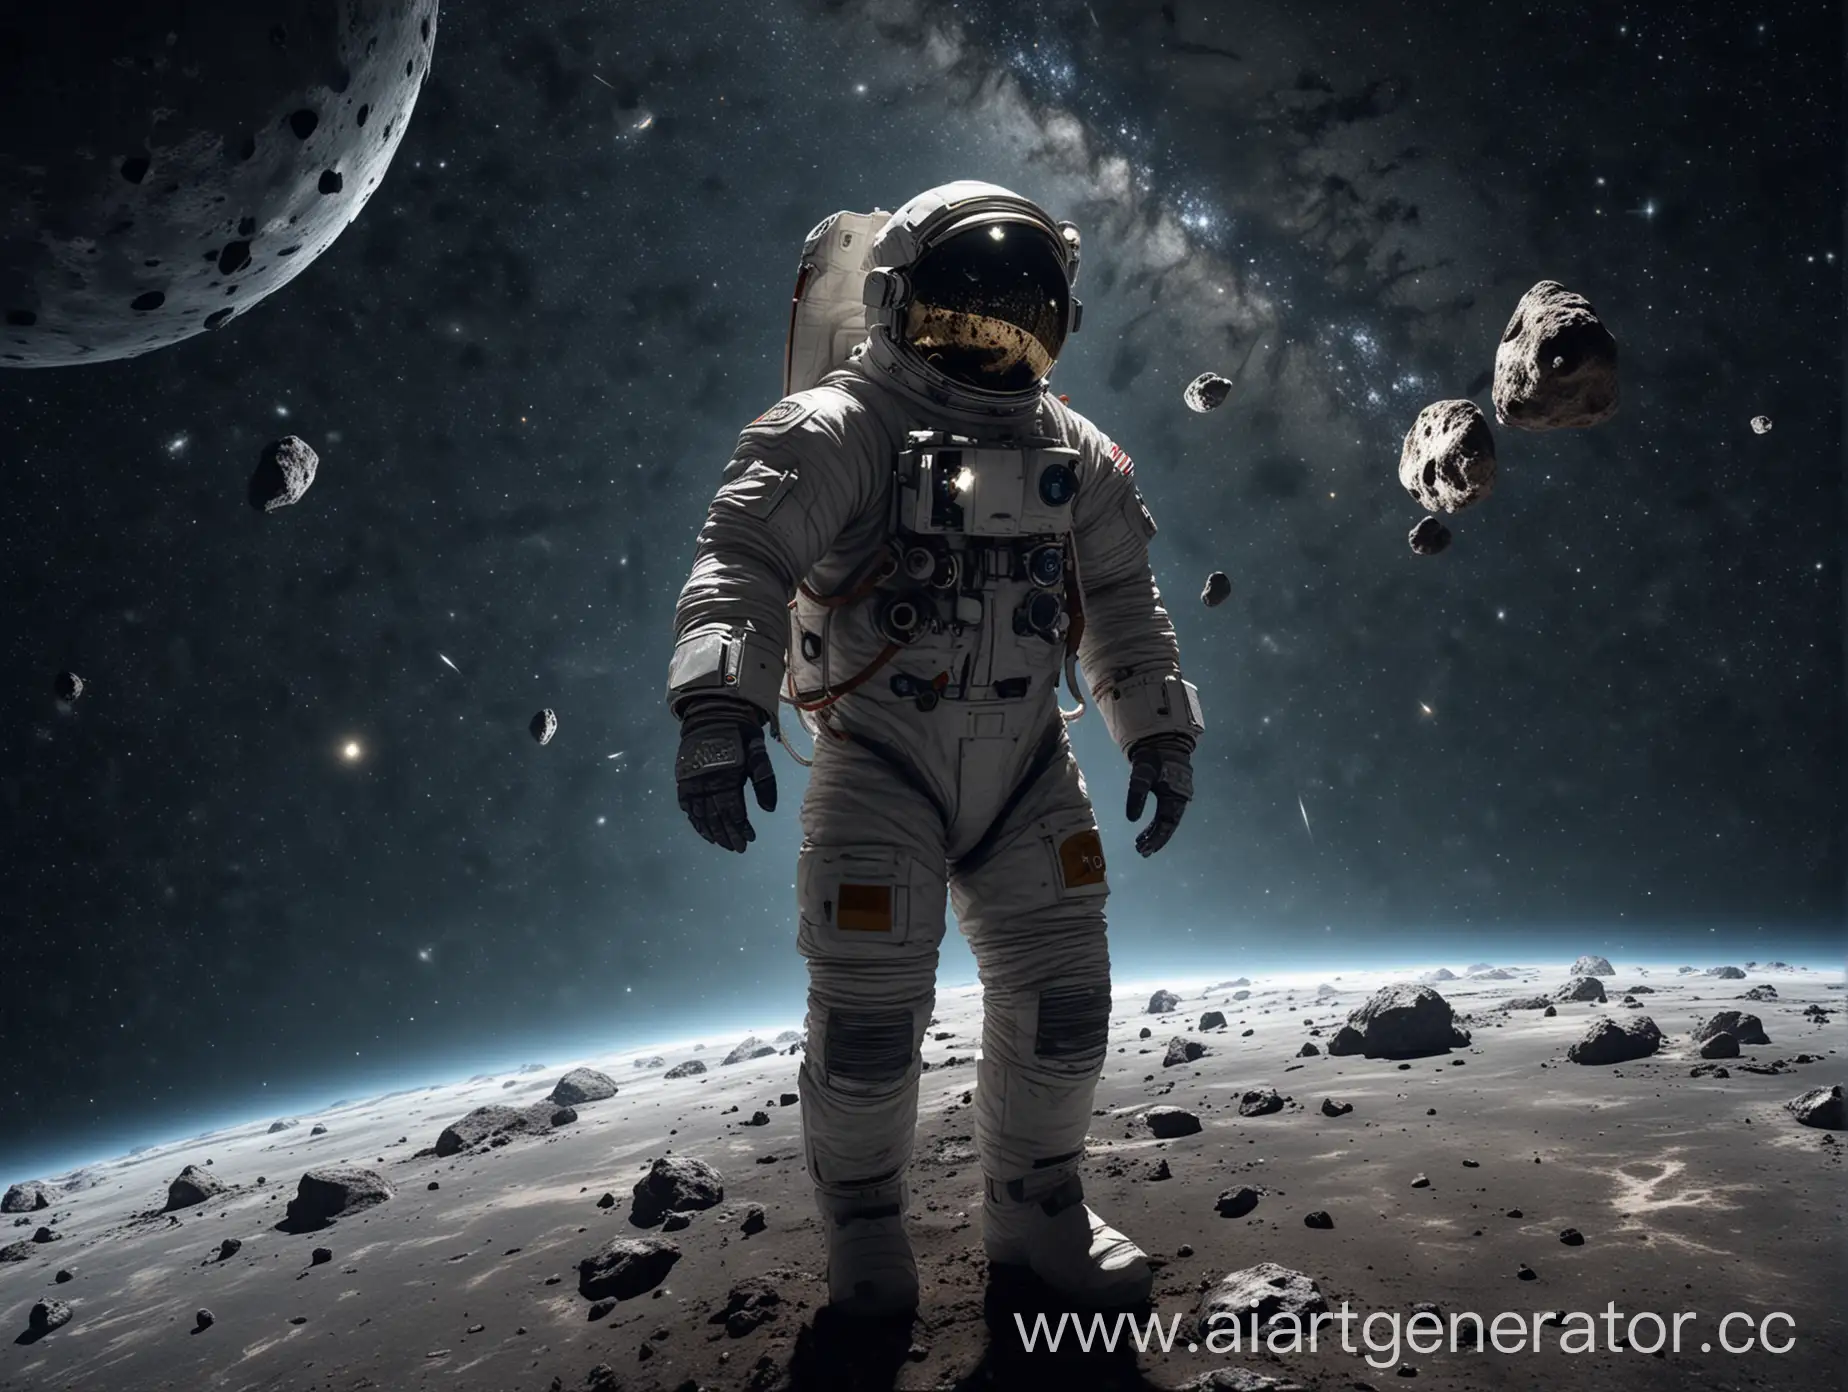 сгенерируй космонавта в космосе, вокруг 5 метеоритов, видно звездное небо, изображение в размере 16:9